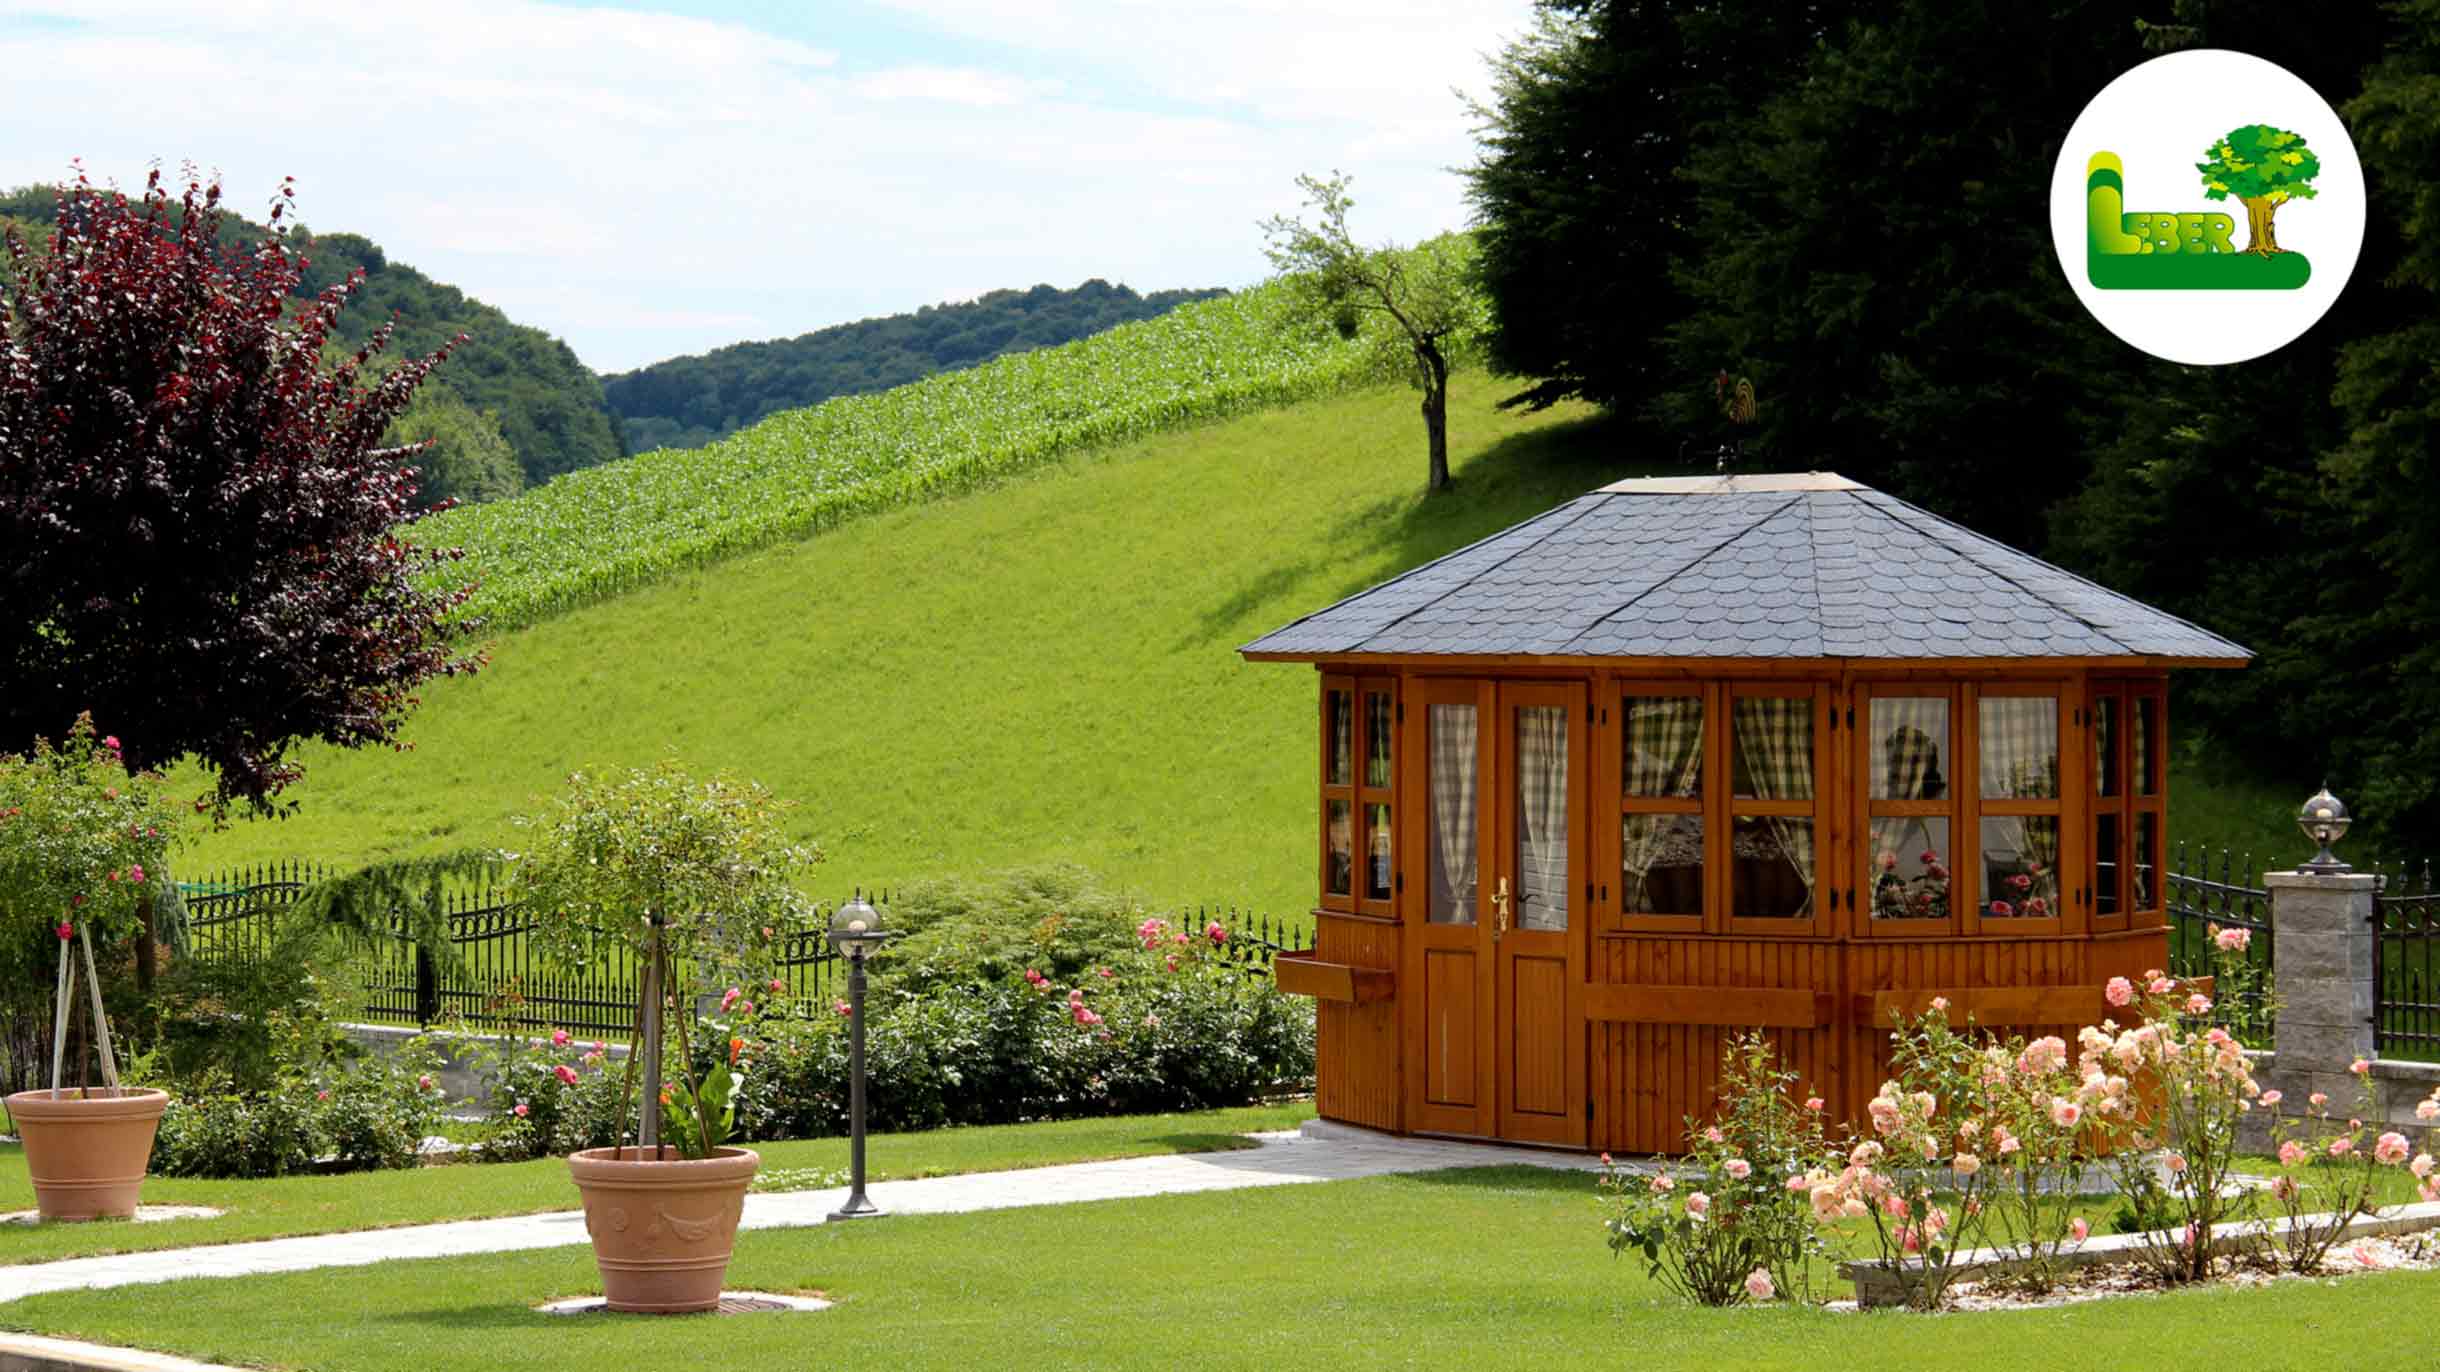 Holzpavillon mit Gartenweg und Bepflanzung. Im Hintergrund: Zaunstein Vesuv